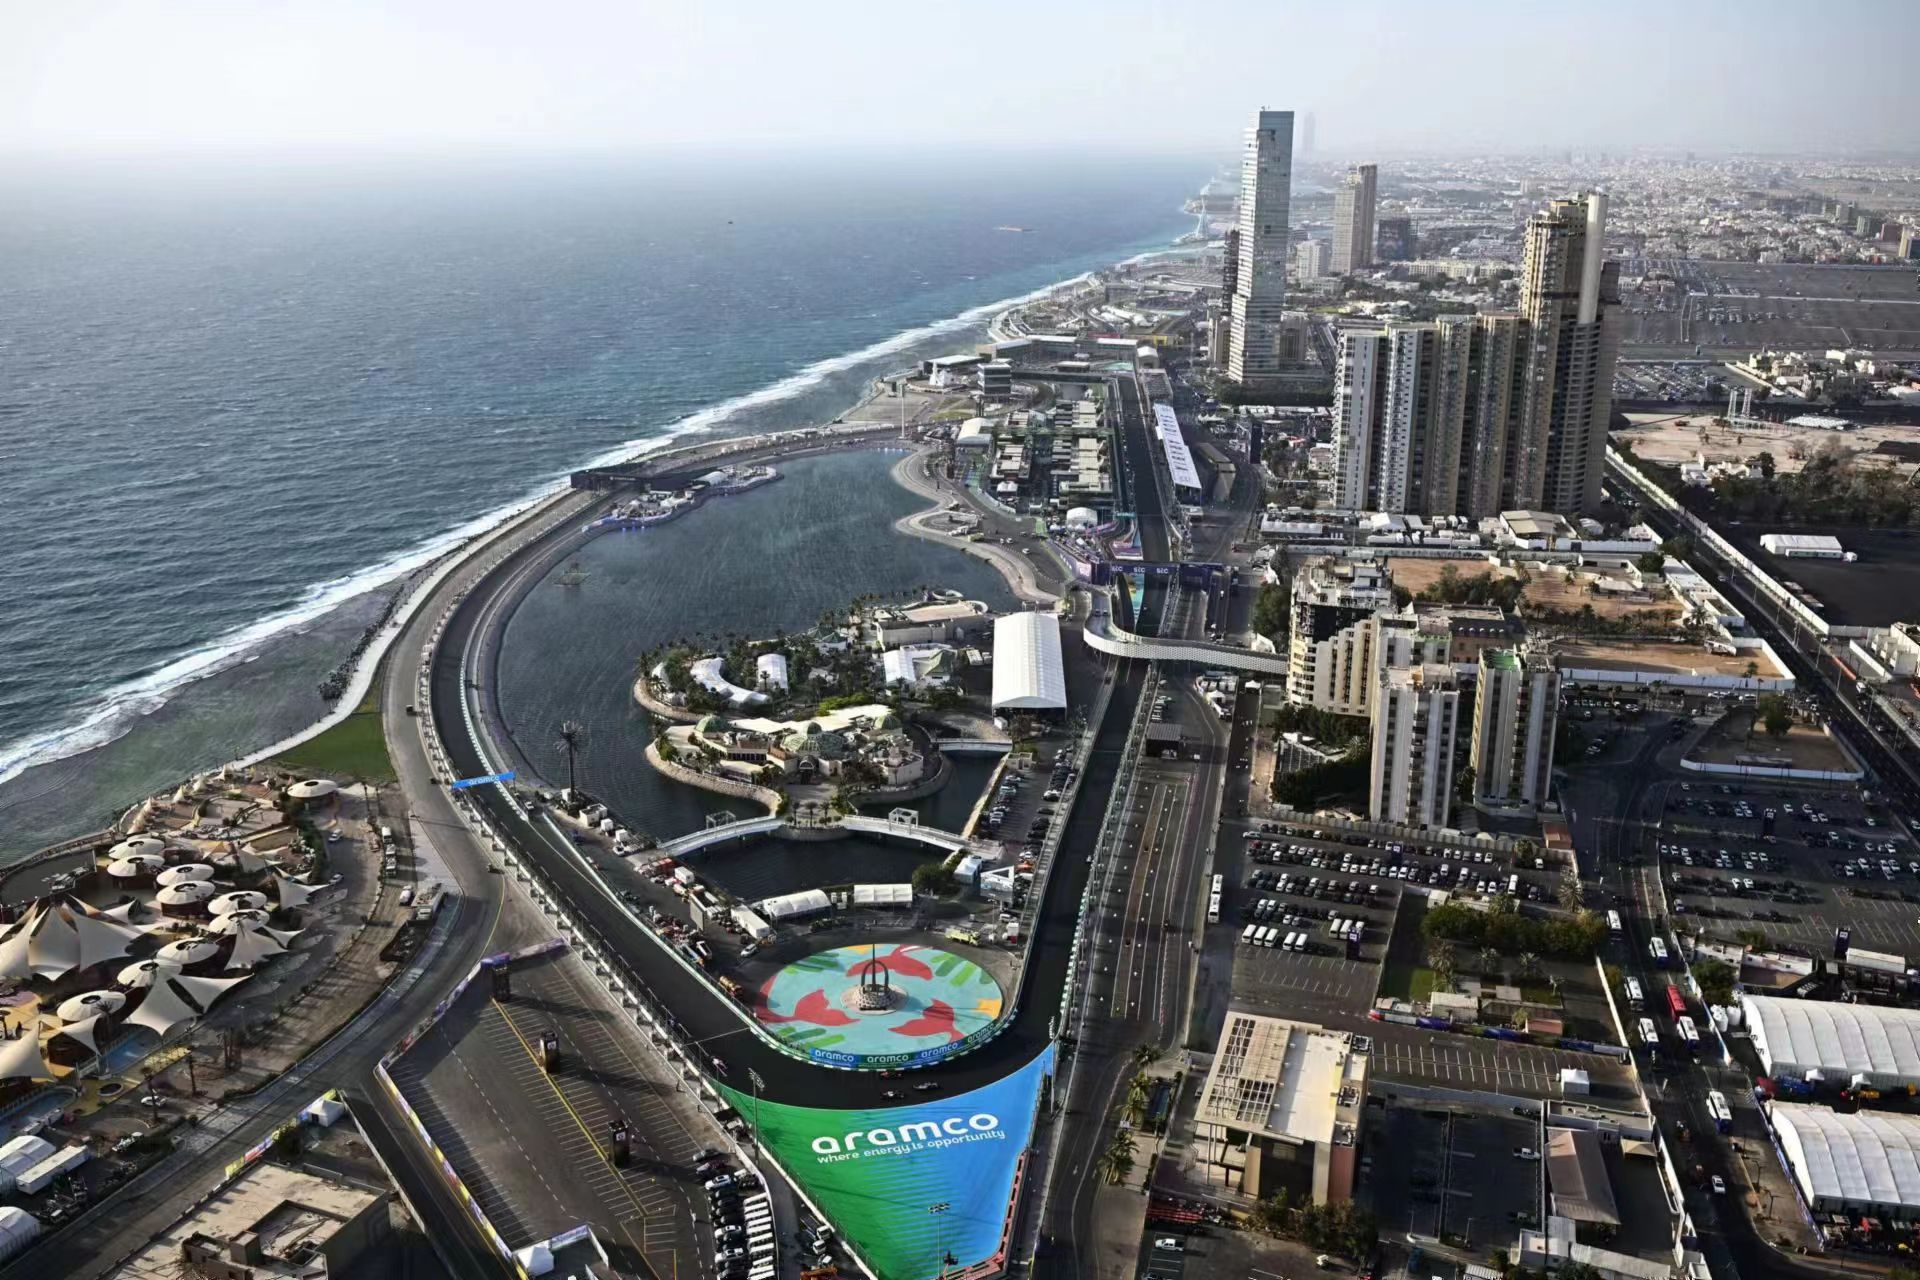 沙特大奖赛赛道条件将会带来改变。